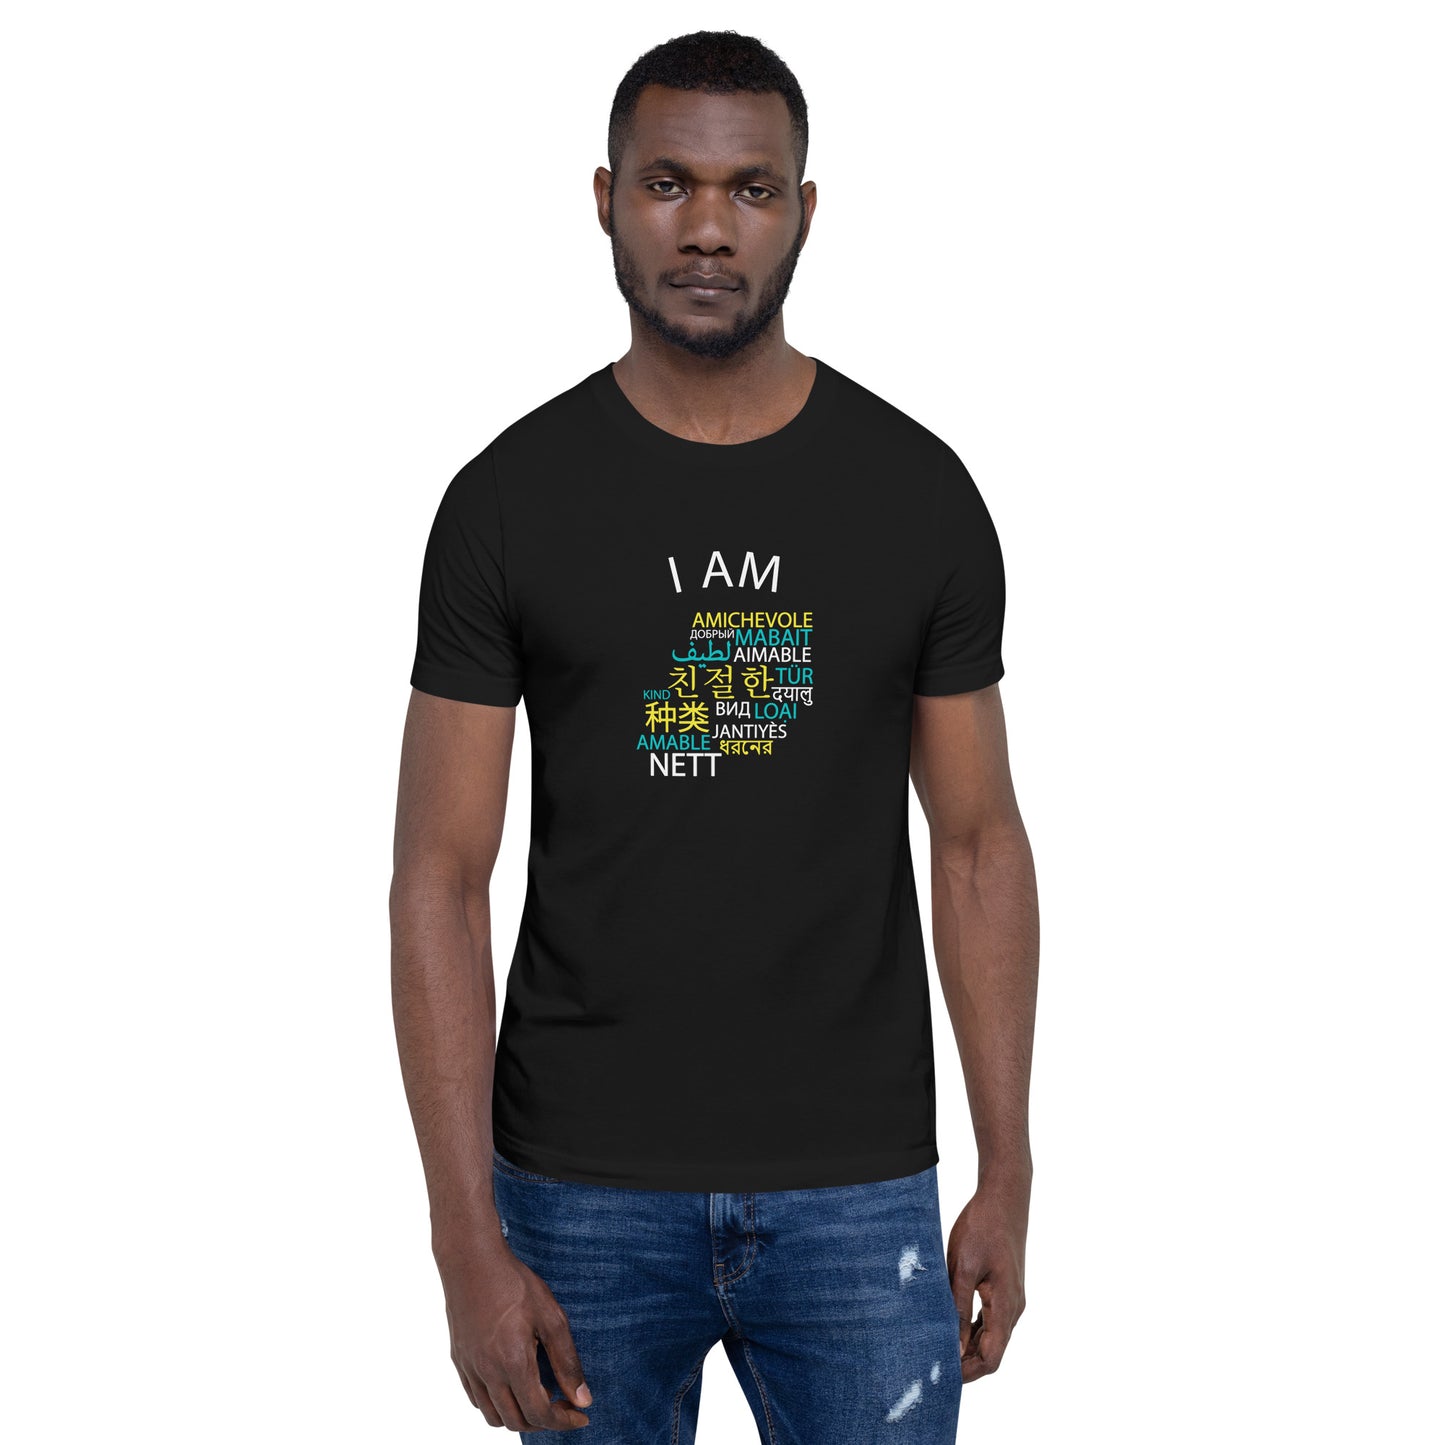 I Am Kind T-shirt